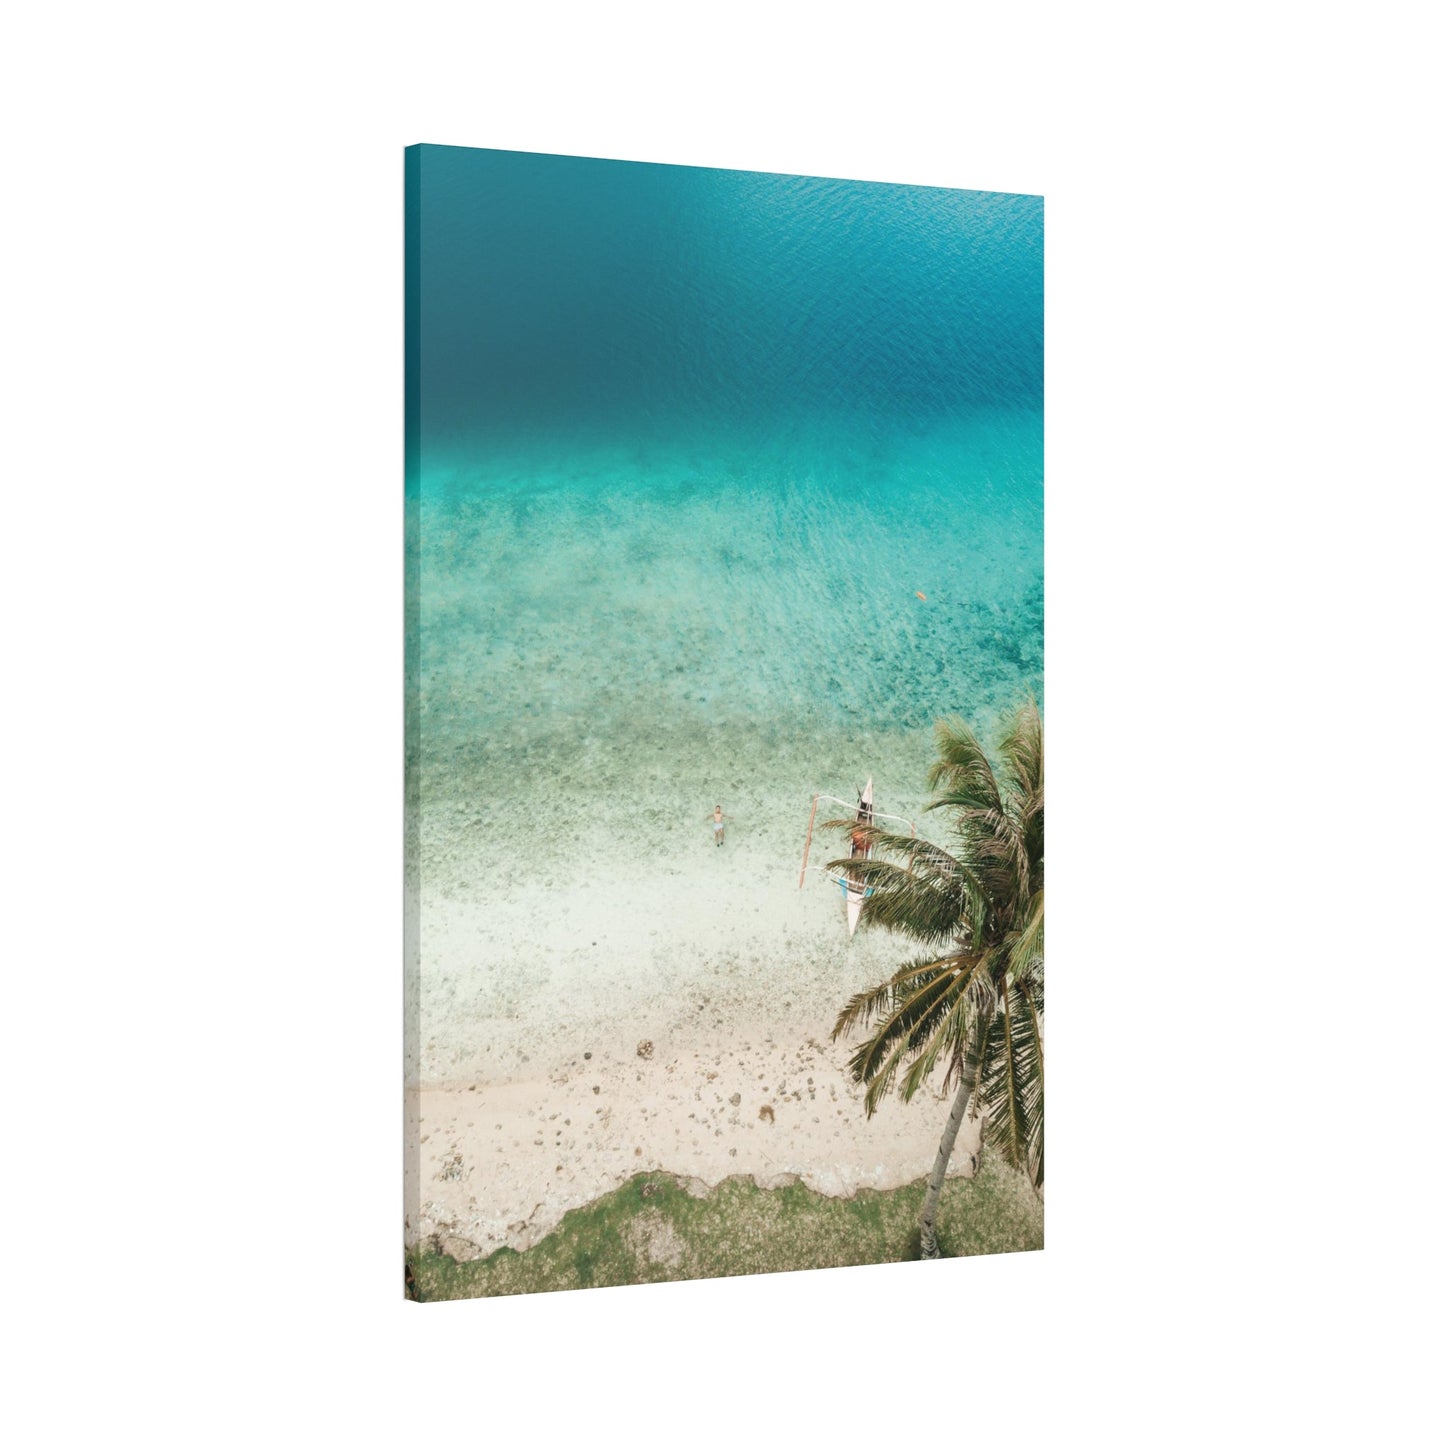 Ocean Paradise: Framed Poster of a Serene Island Beach Scene